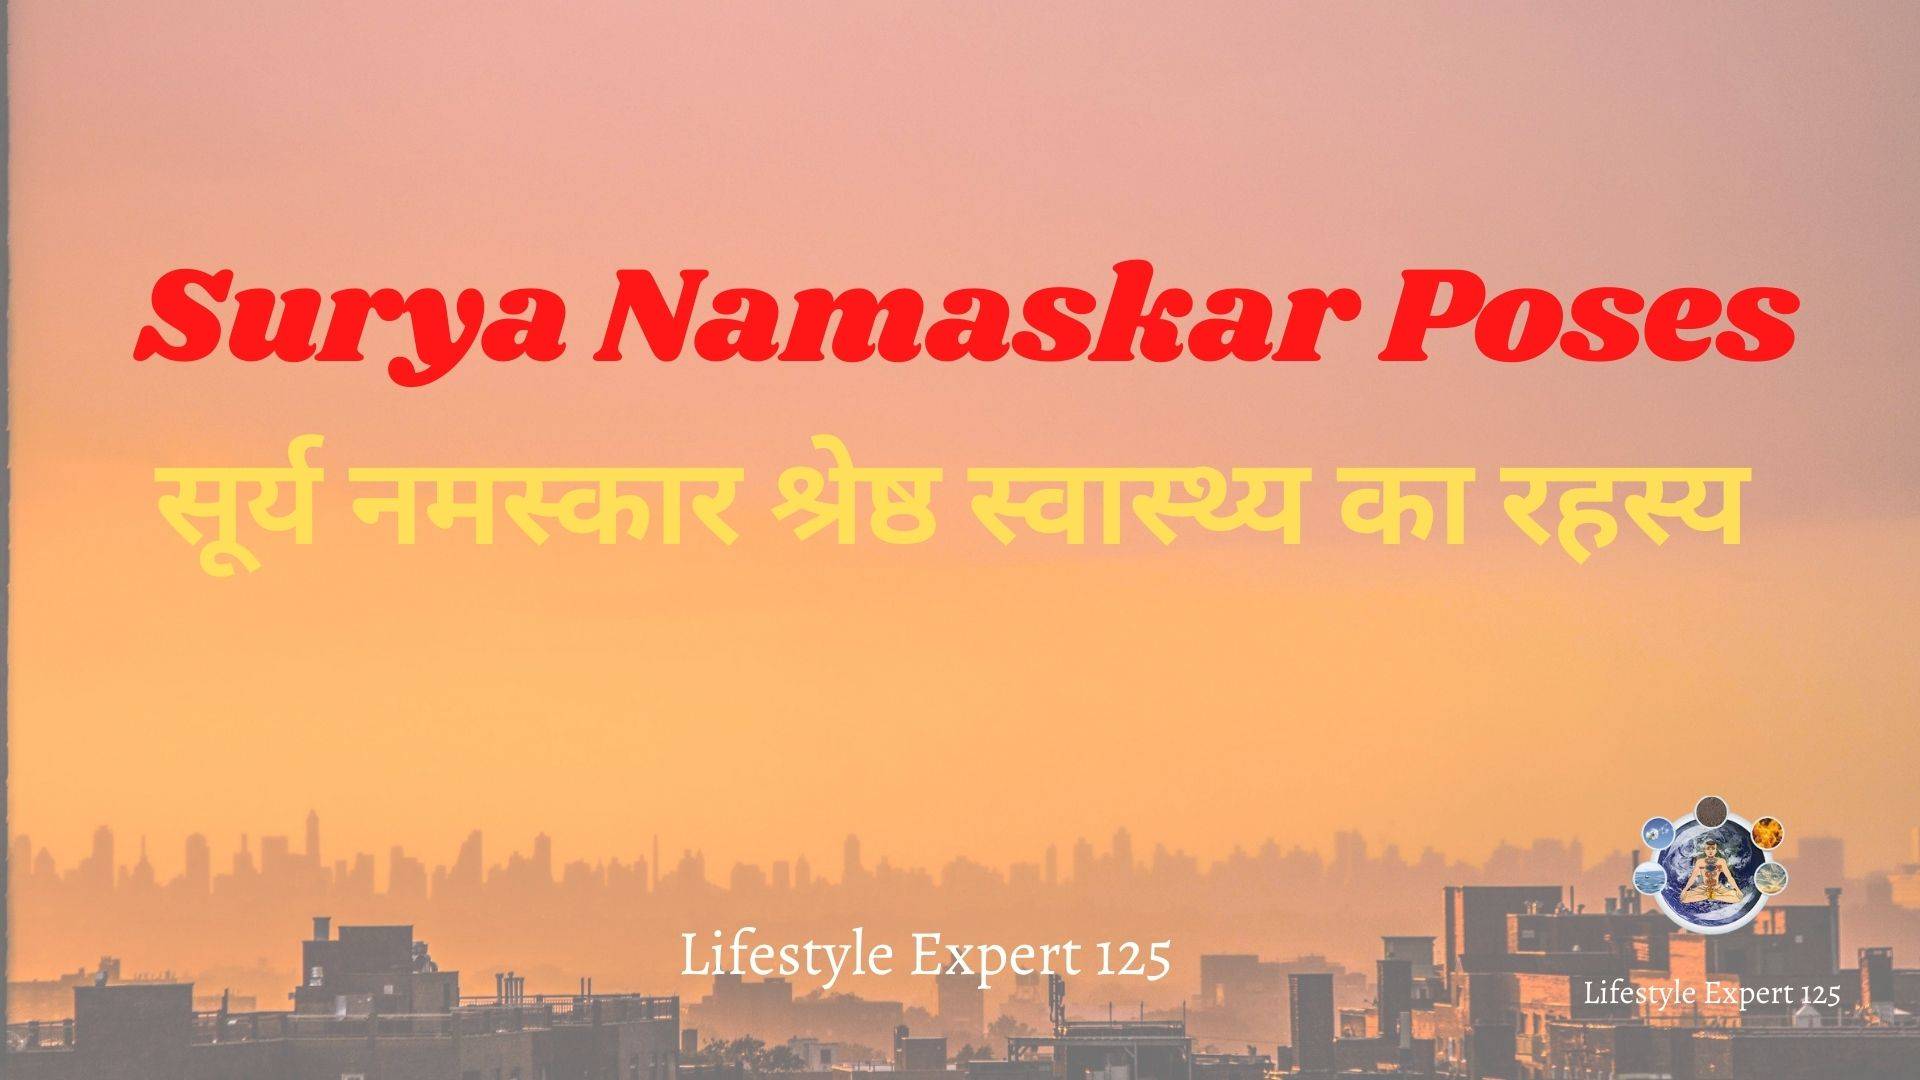 Surya Namaskar Poses